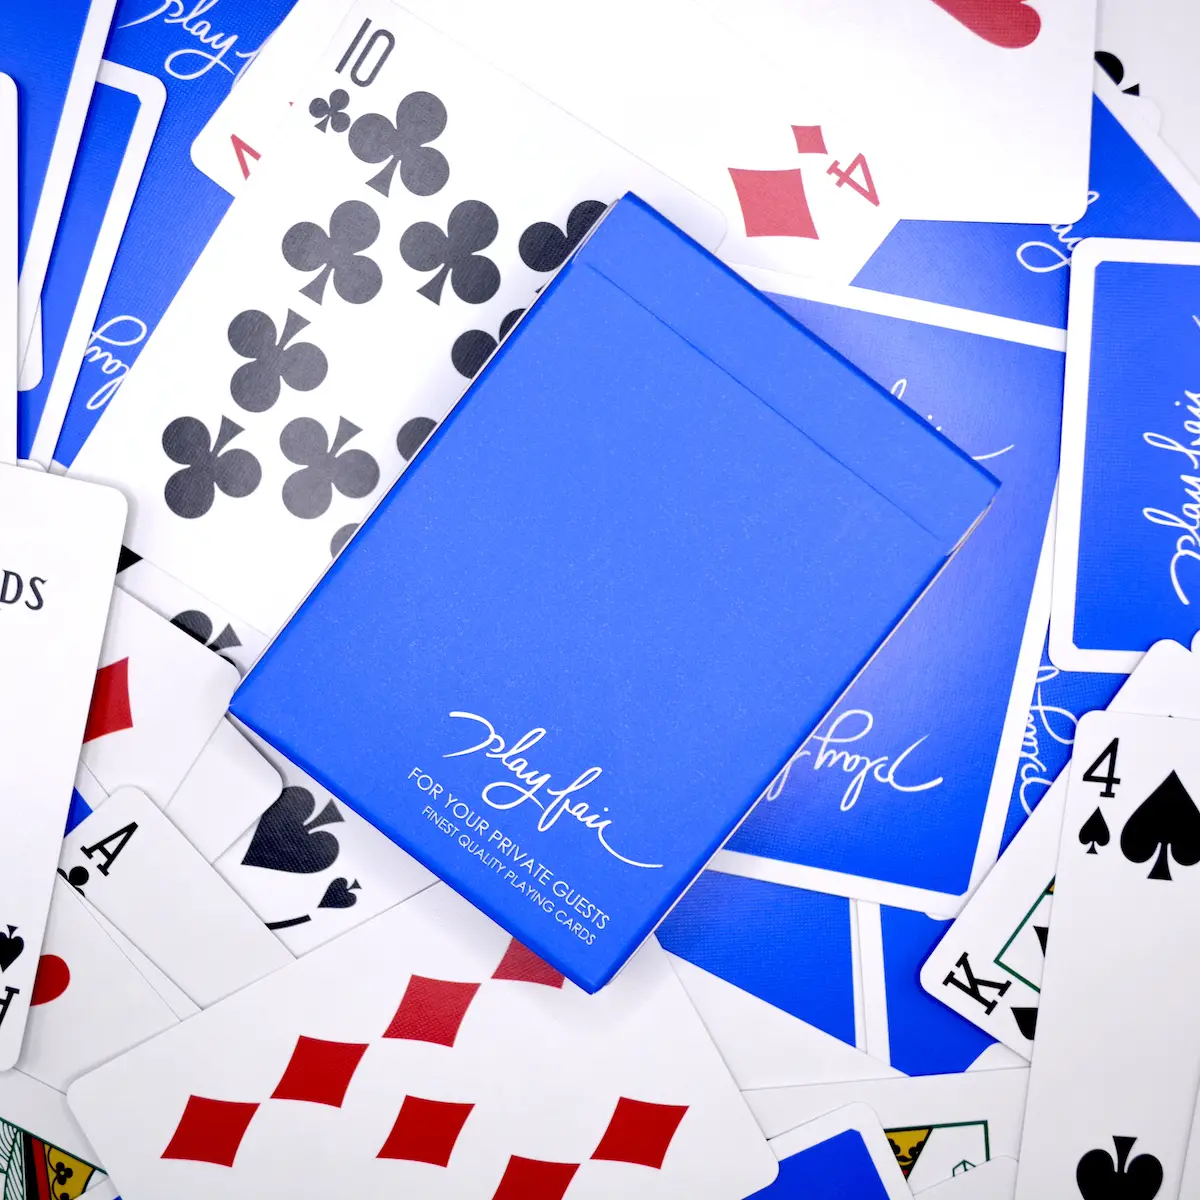 日本人デザインのデック、カードの広がりの良さに感動するPlayfair